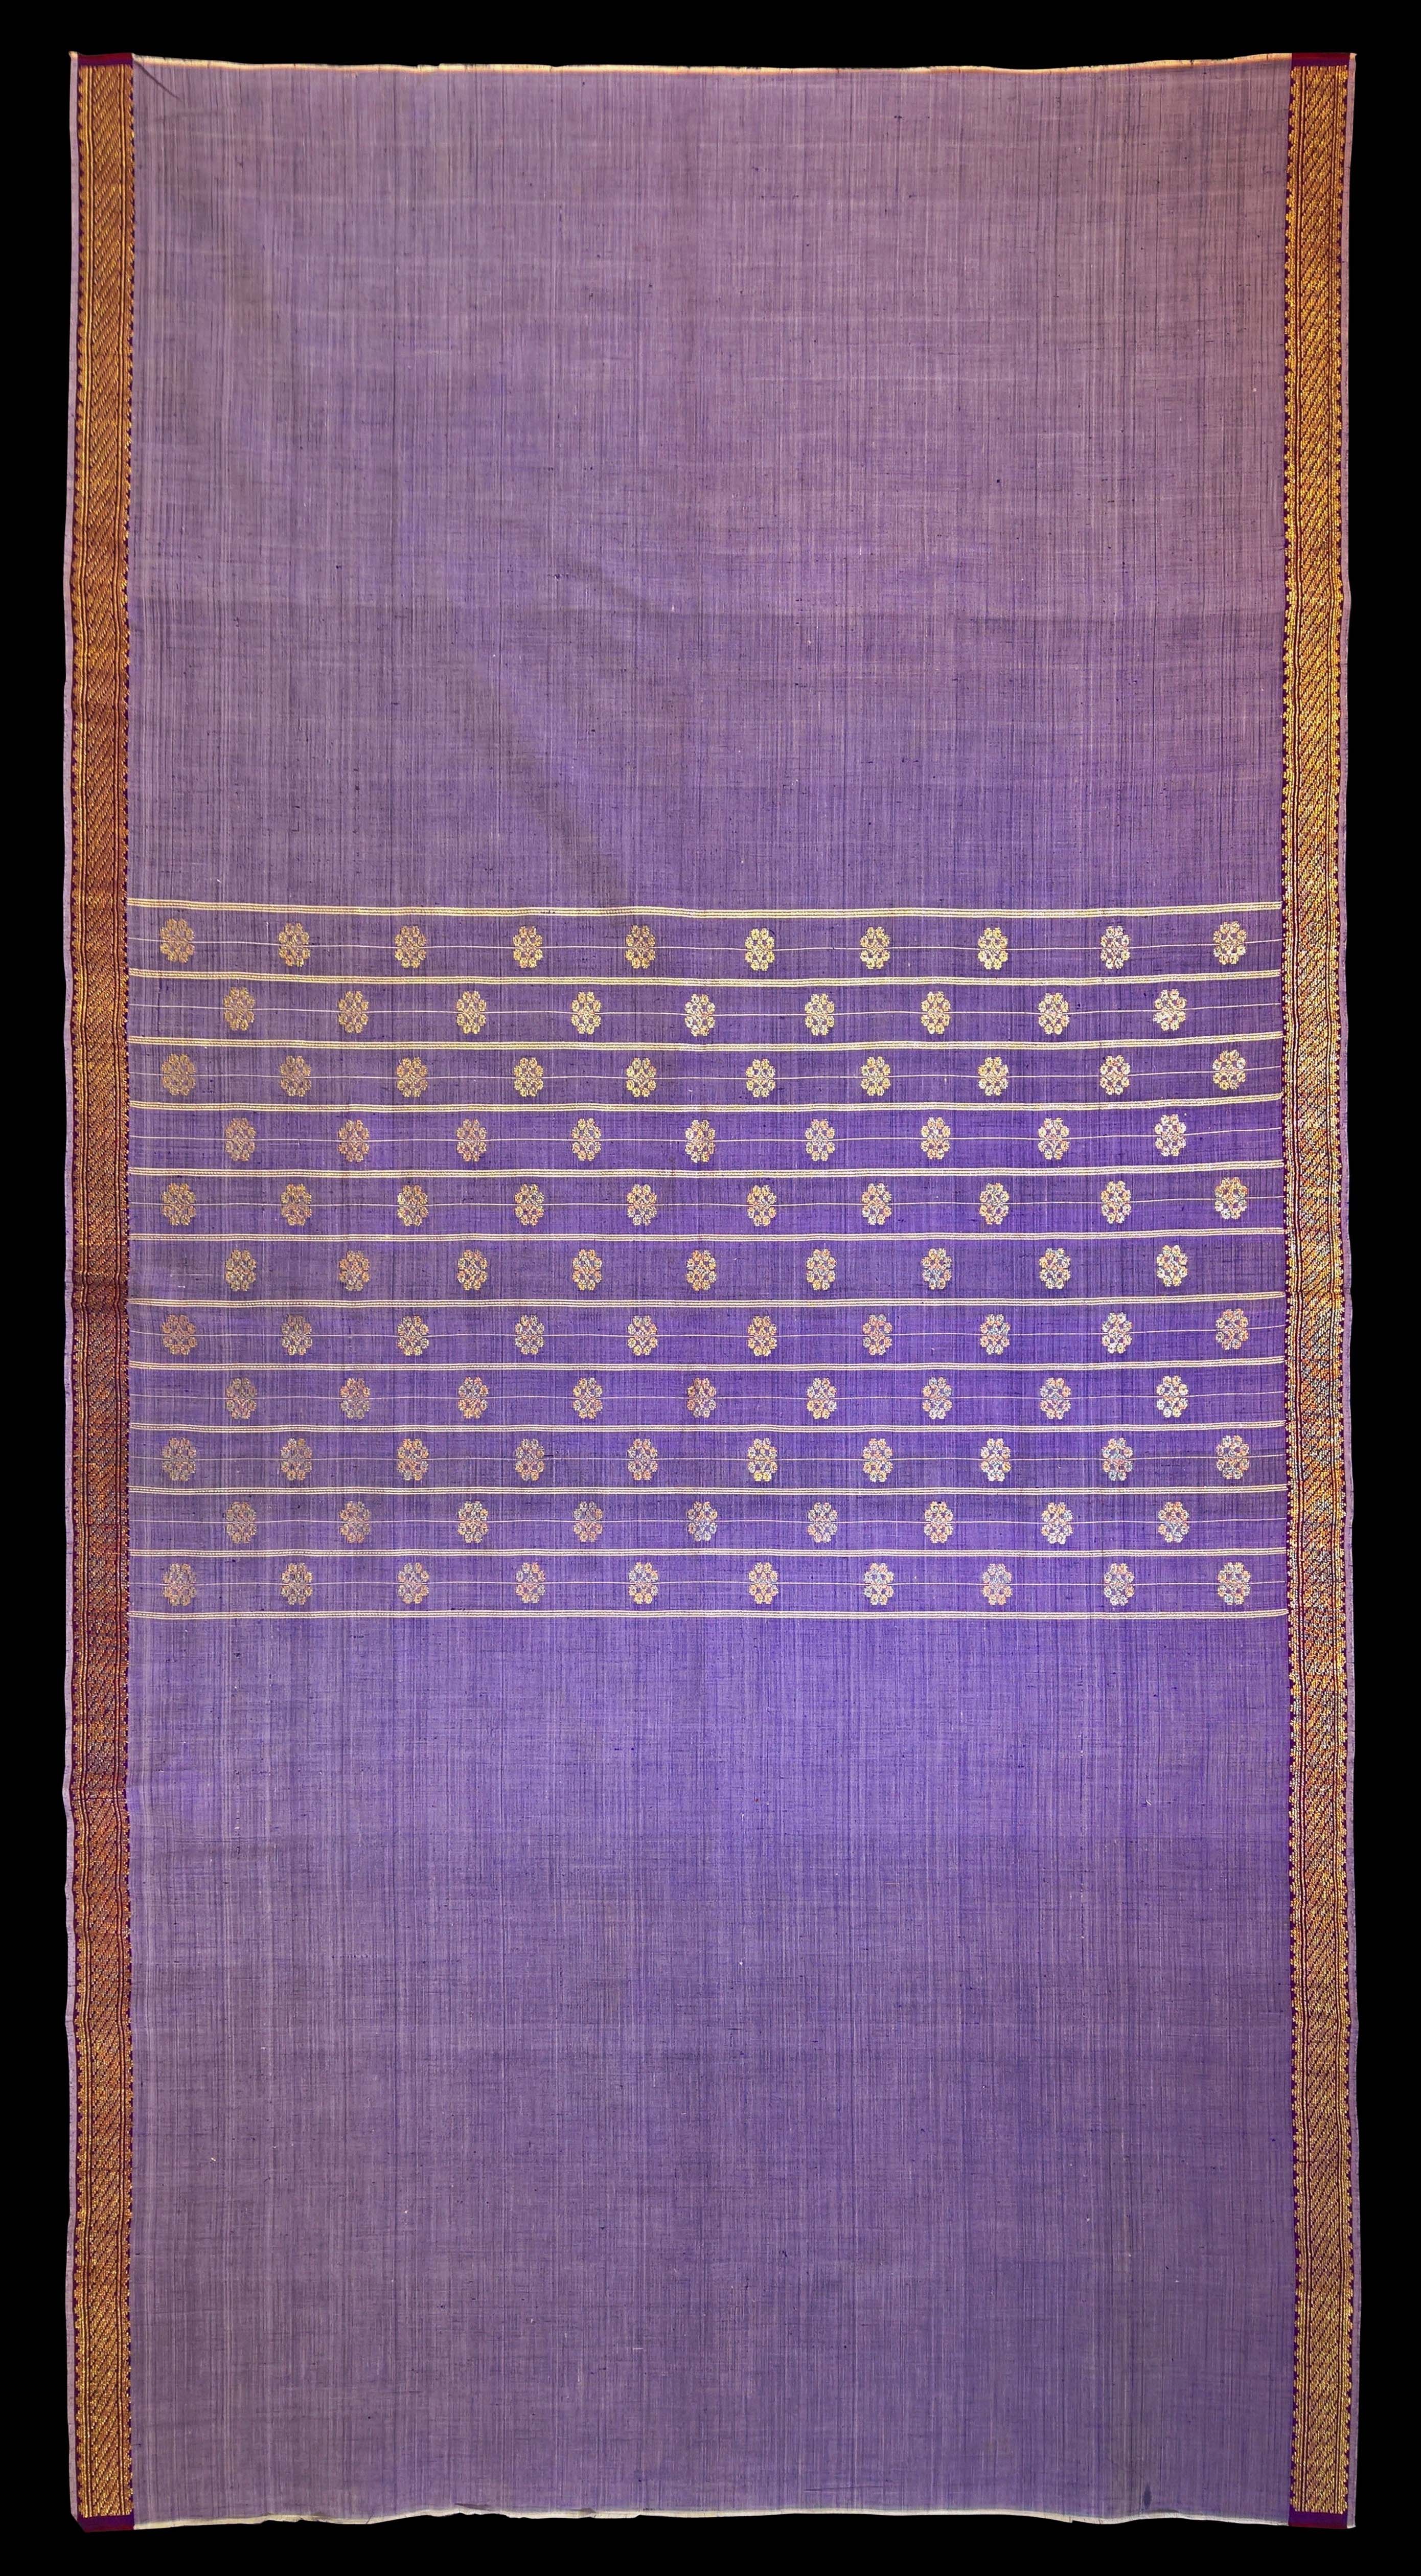 Malay Gold Thread & Cotton Woven Textile (Kain Tenun)